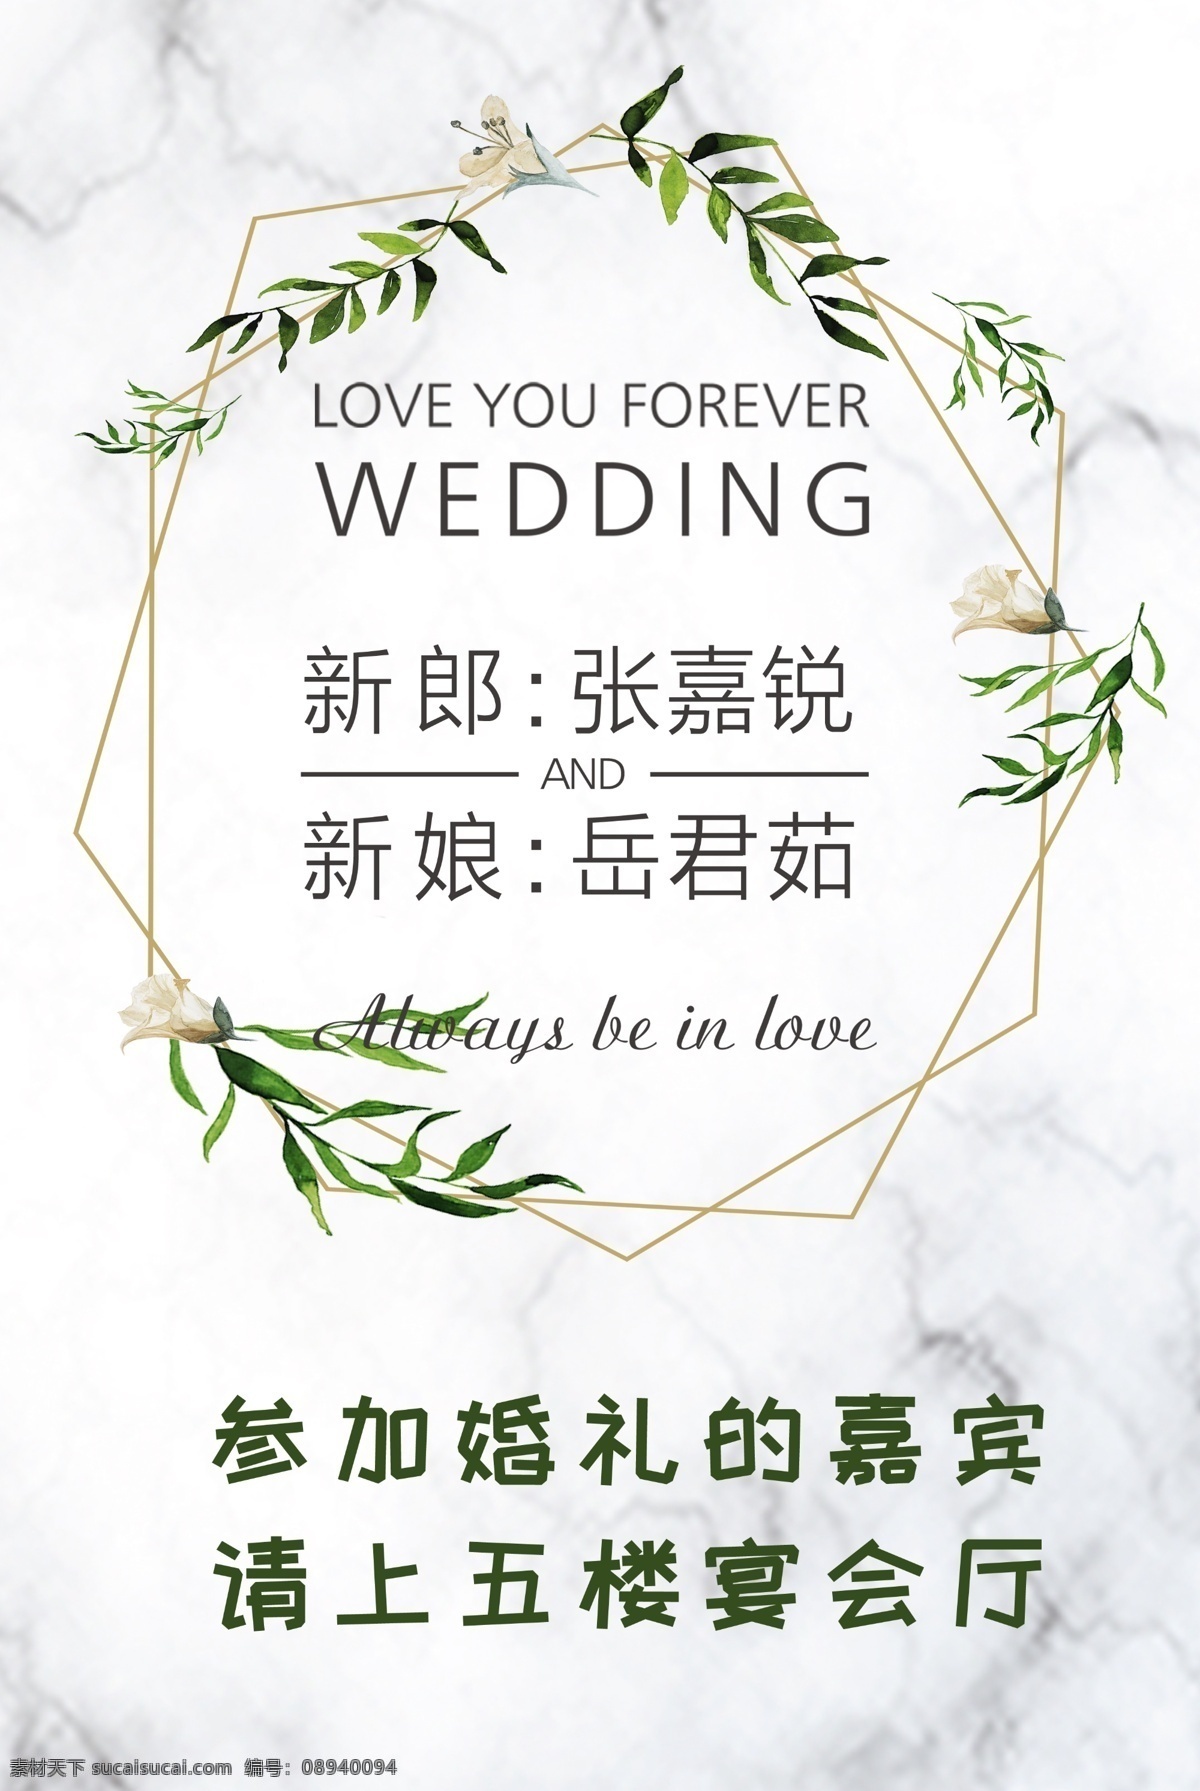 婚礼水牌 白绿色 大理石 婚礼 水牌 海报